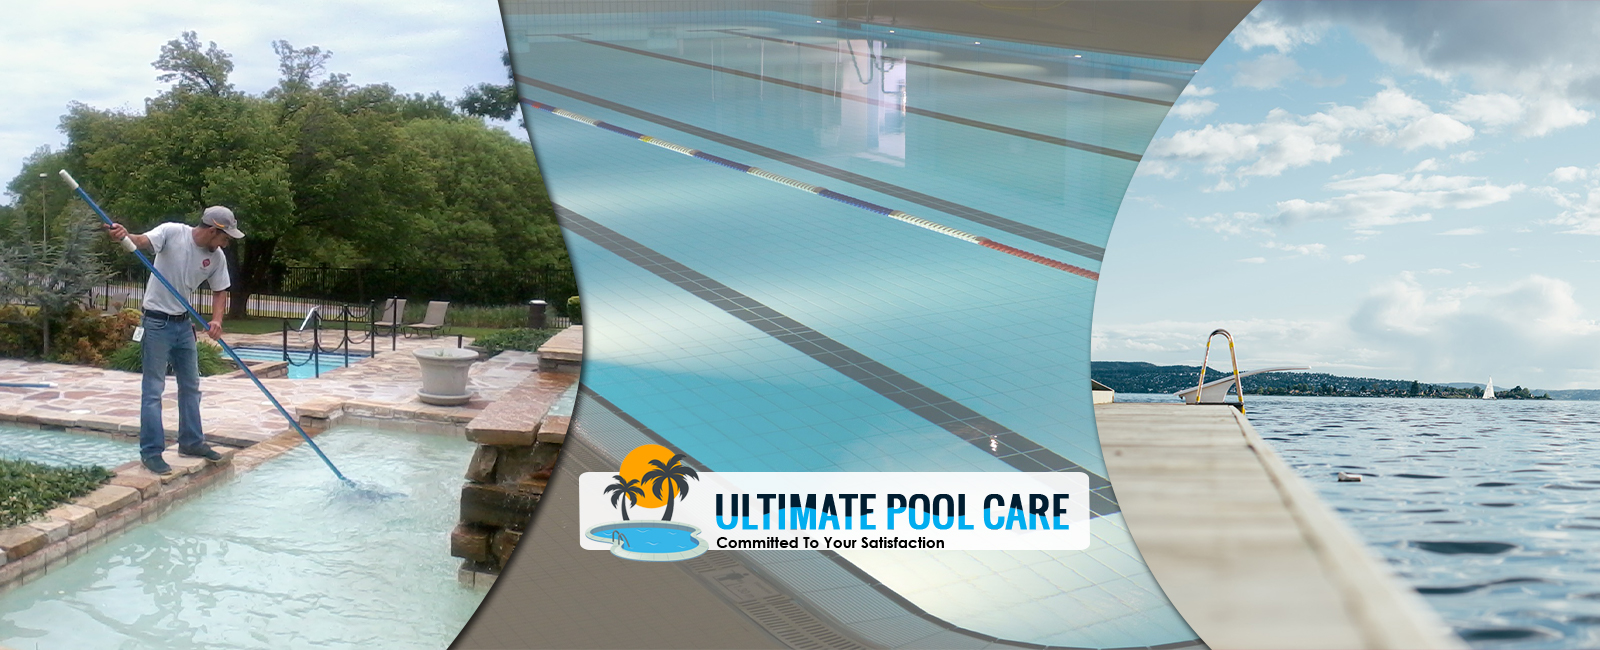 pool-expert-using-leaf-net-in-outdoor-pool-big-inground-pool